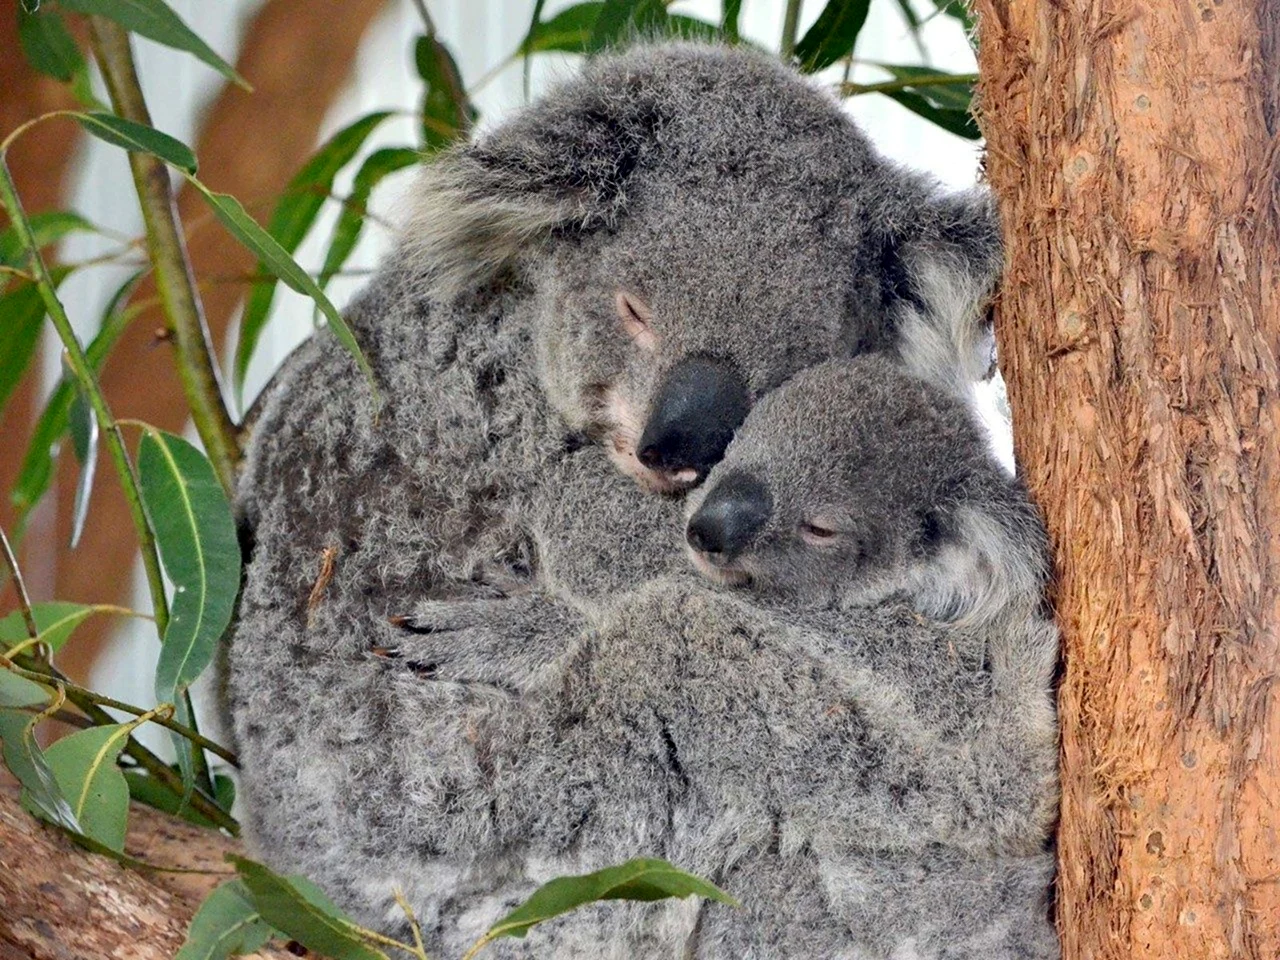 How long Koalas Live for